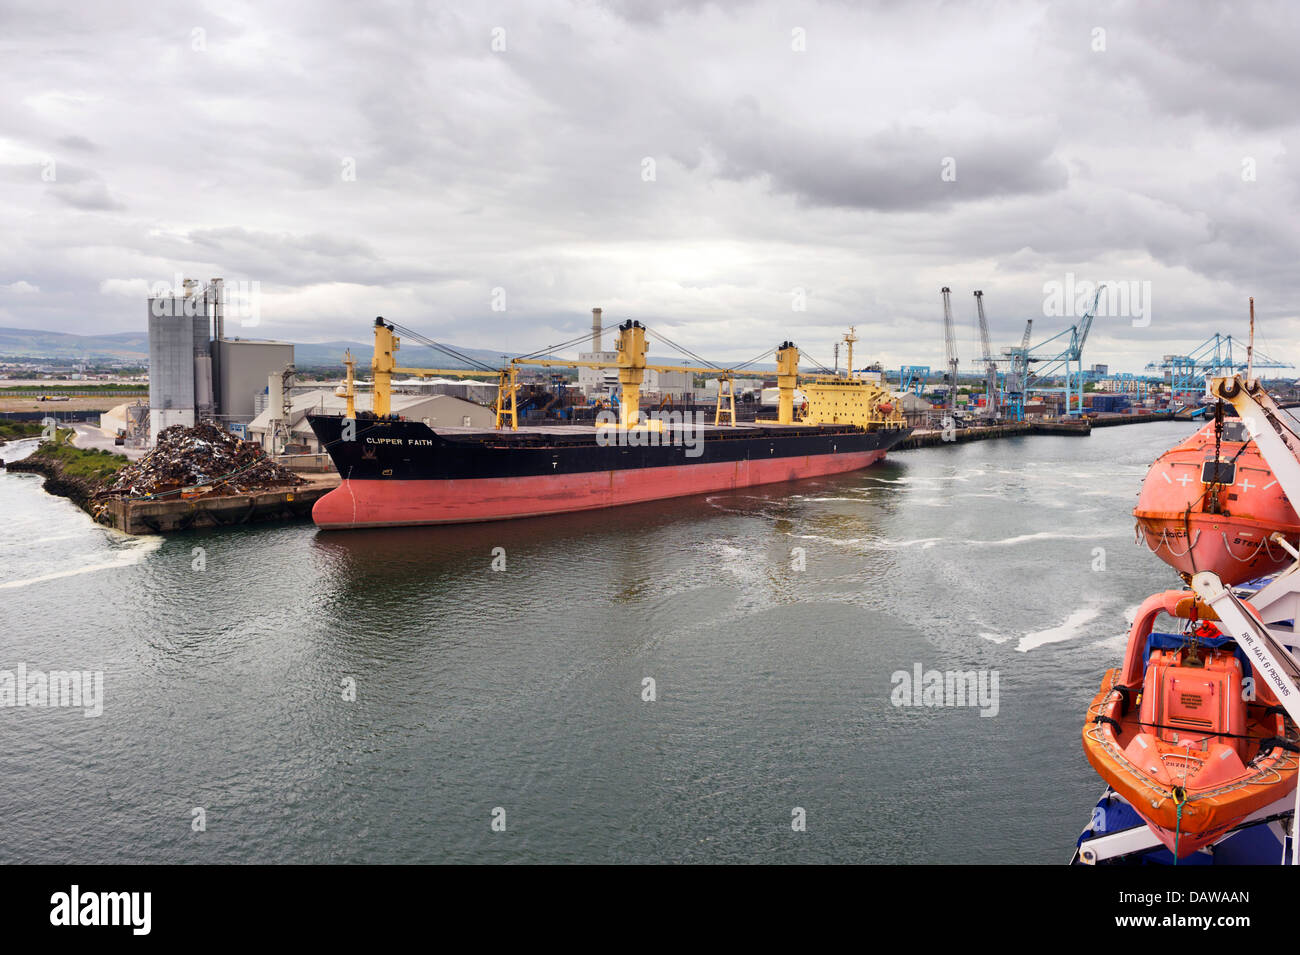 Docked ship at Dublin Port, Republic of Ireland Stock Photo